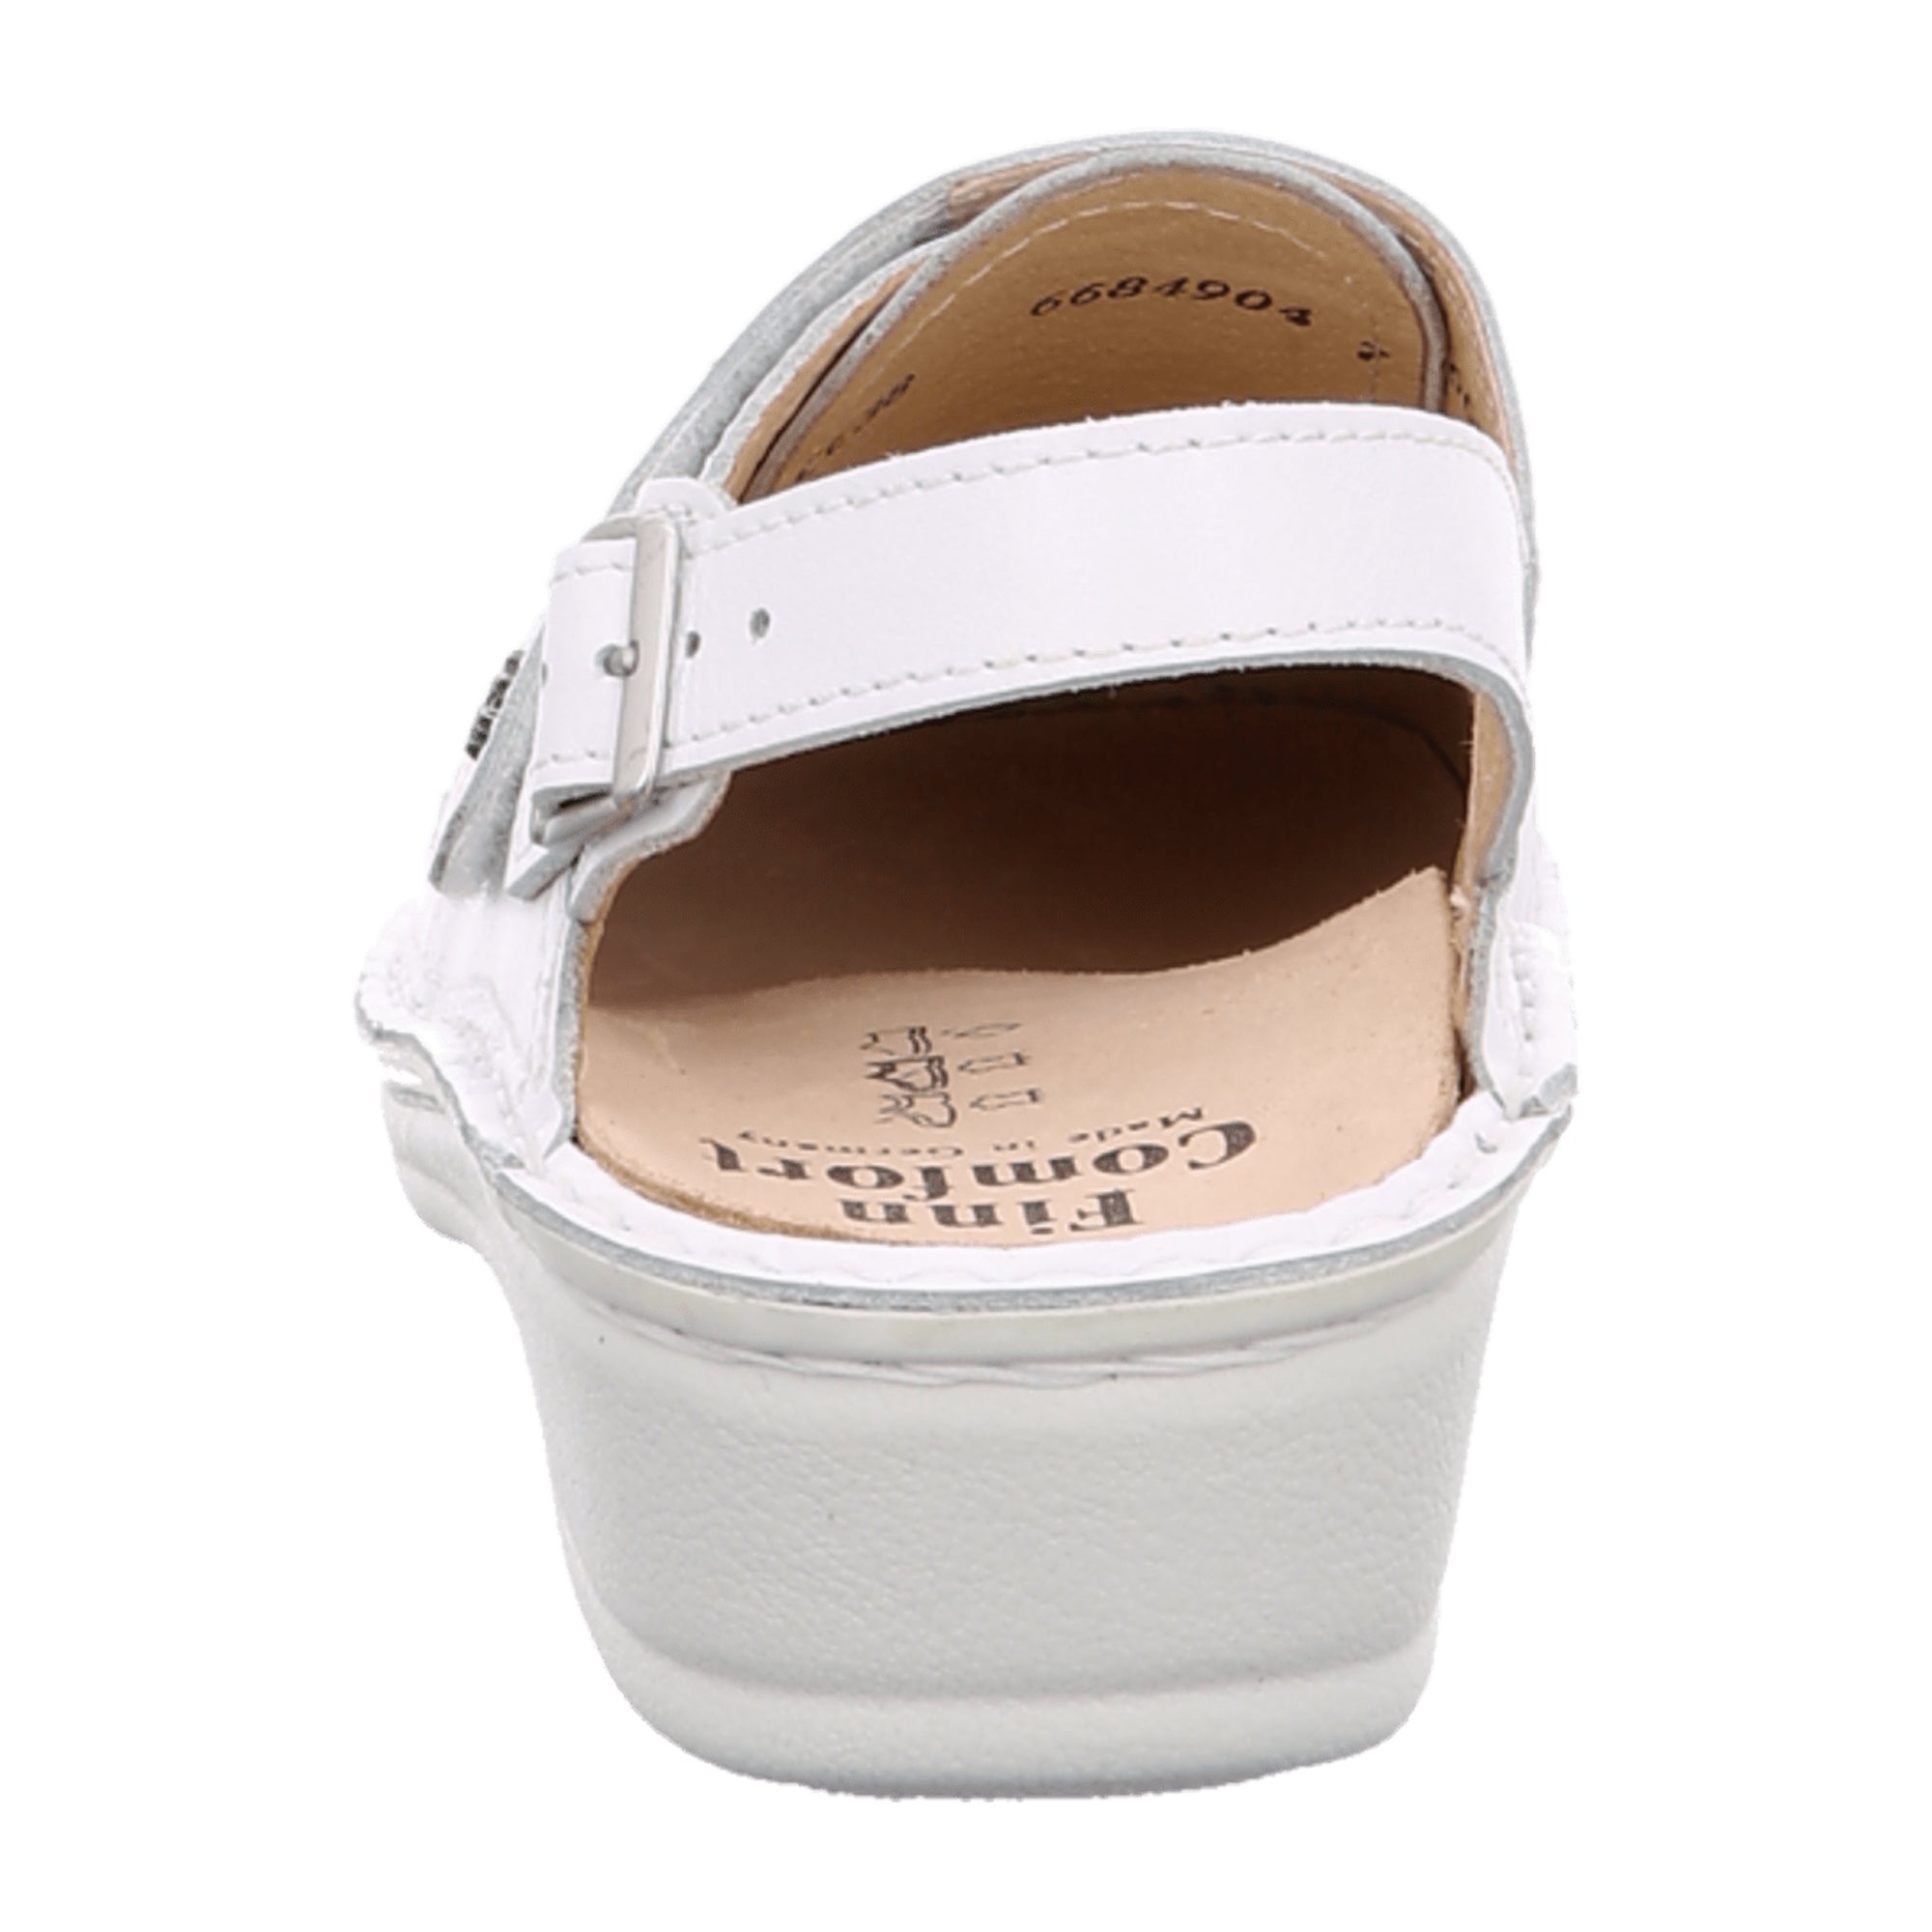 Finn Comfort Assuan White Women's Clog - Comfortable Slip-Resistant Nursing Shoes